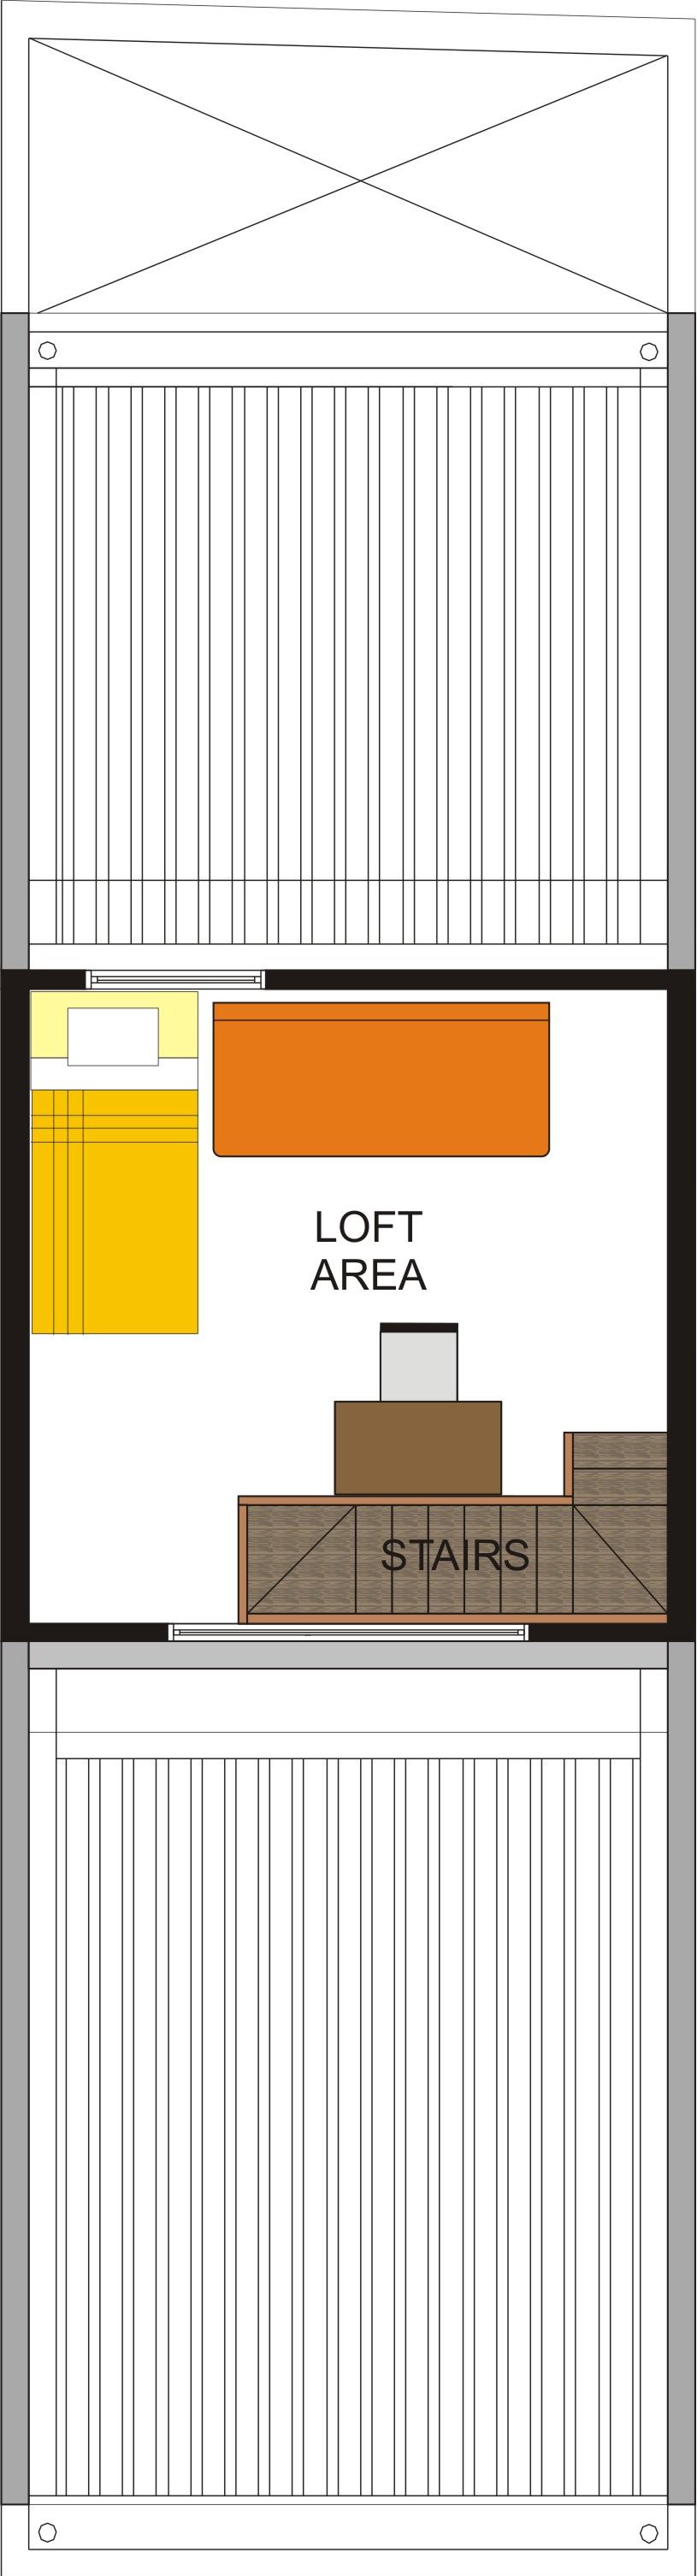 Unit D 3rd floor Loft